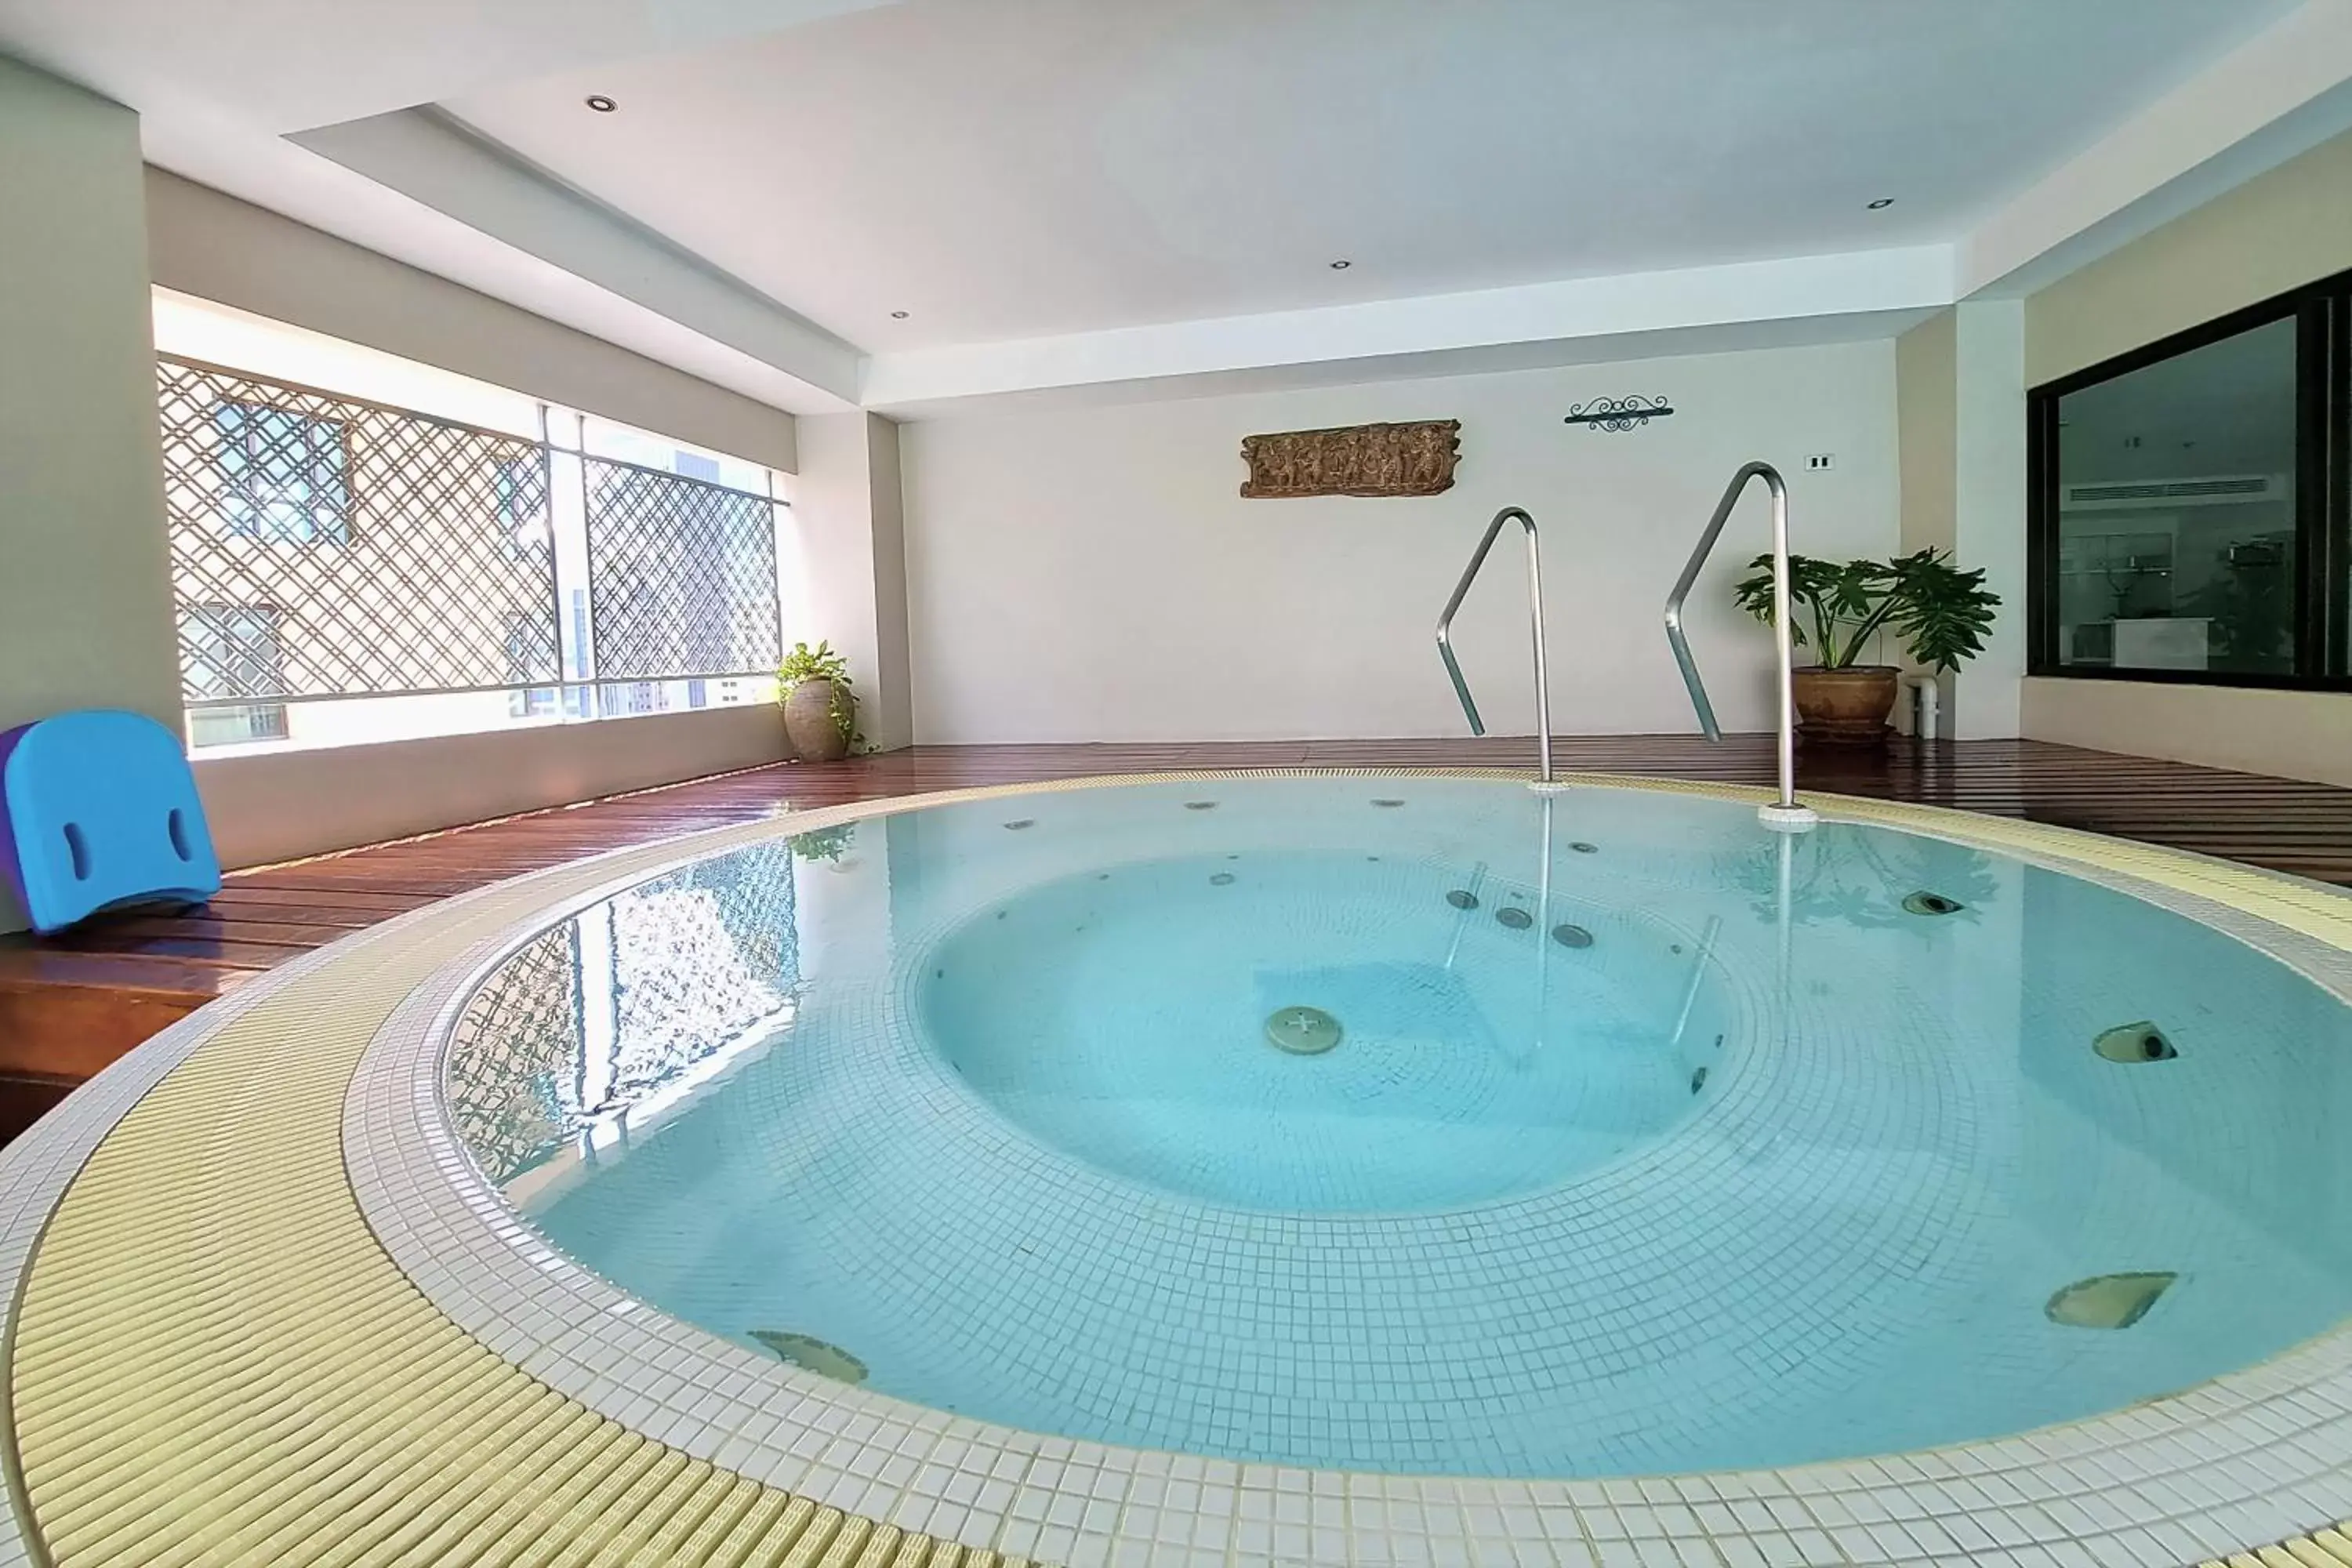 Hot Tub, Swimming Pool in Cape House Langsuan Hotel